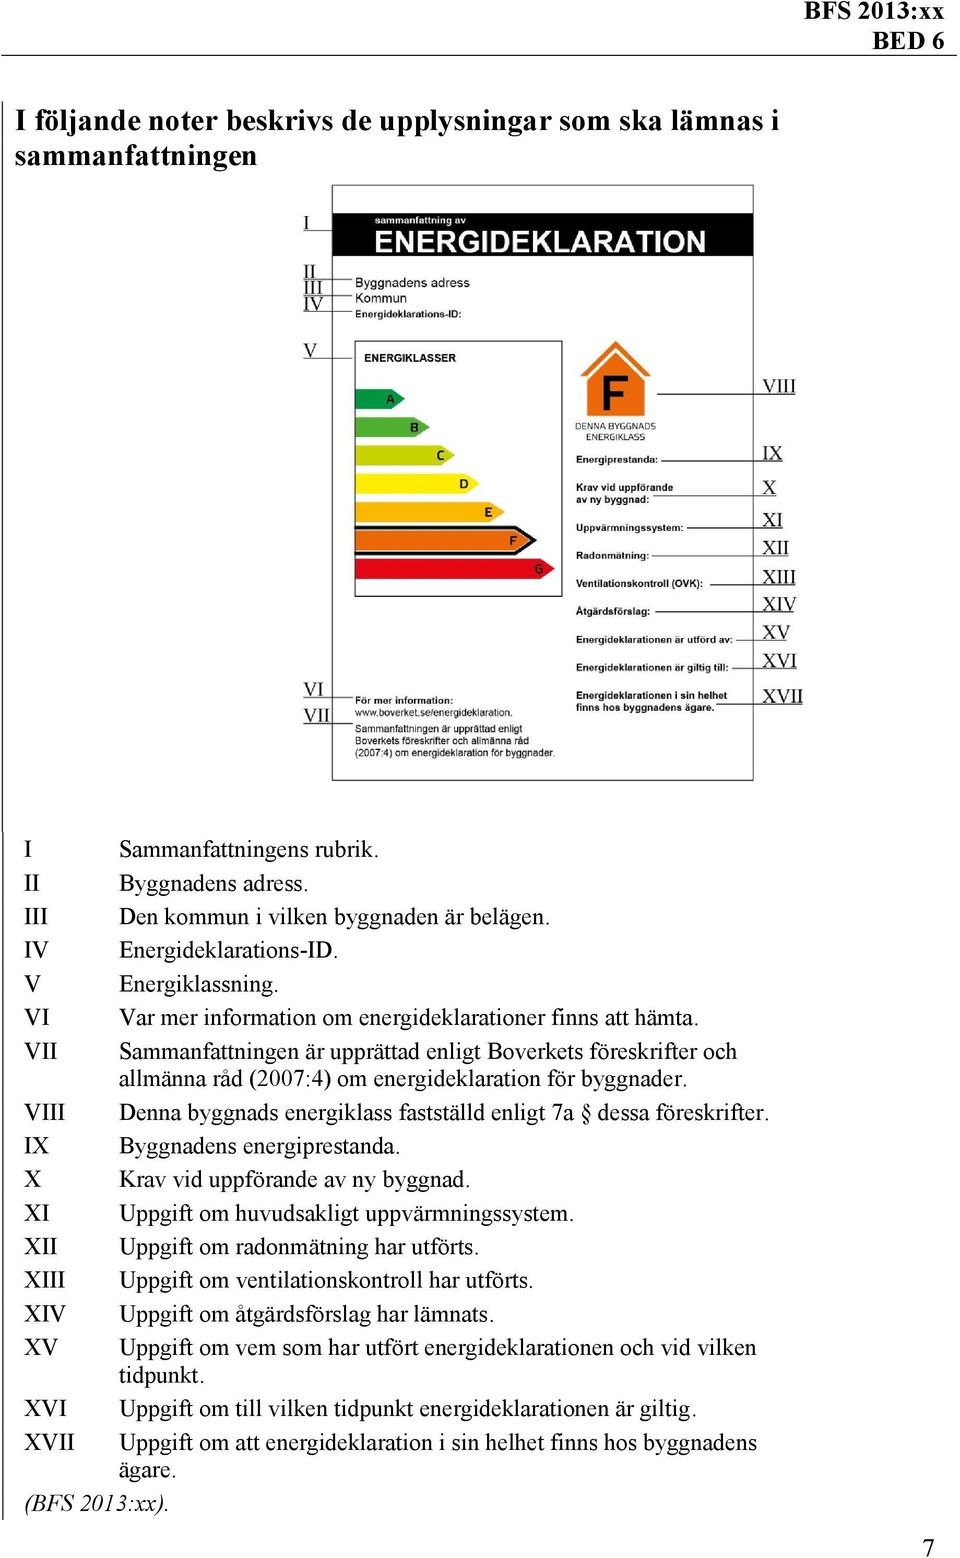 VII Sammanfattningen är upprättad enligt Boverkets föreskrifter och allmänna råd (2007:4) om energideklaration för byggnader. VIII Denna byggnads energiklass fastställd enligt 7a dessa föreskrifter.